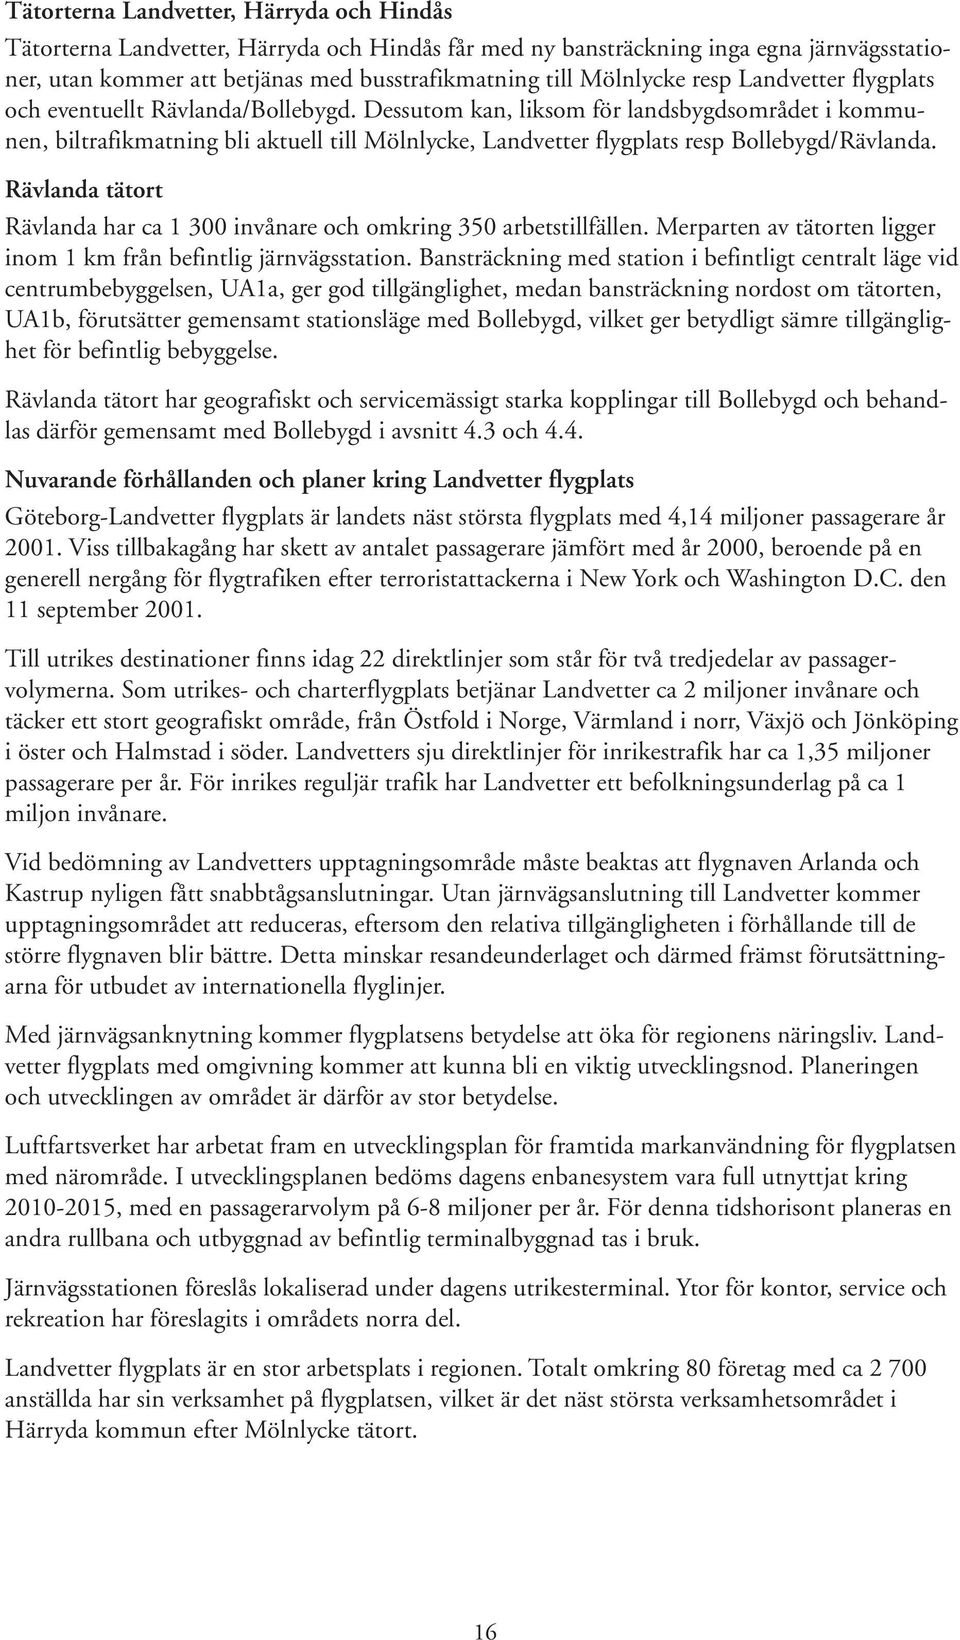 Dessutom kan, liksom för landsbygdsområdet i kommunen, biltrafikmatning bli aktuell till Mölnlycke, Landvetter flygplats resp Bollebygd/Rävlanda.